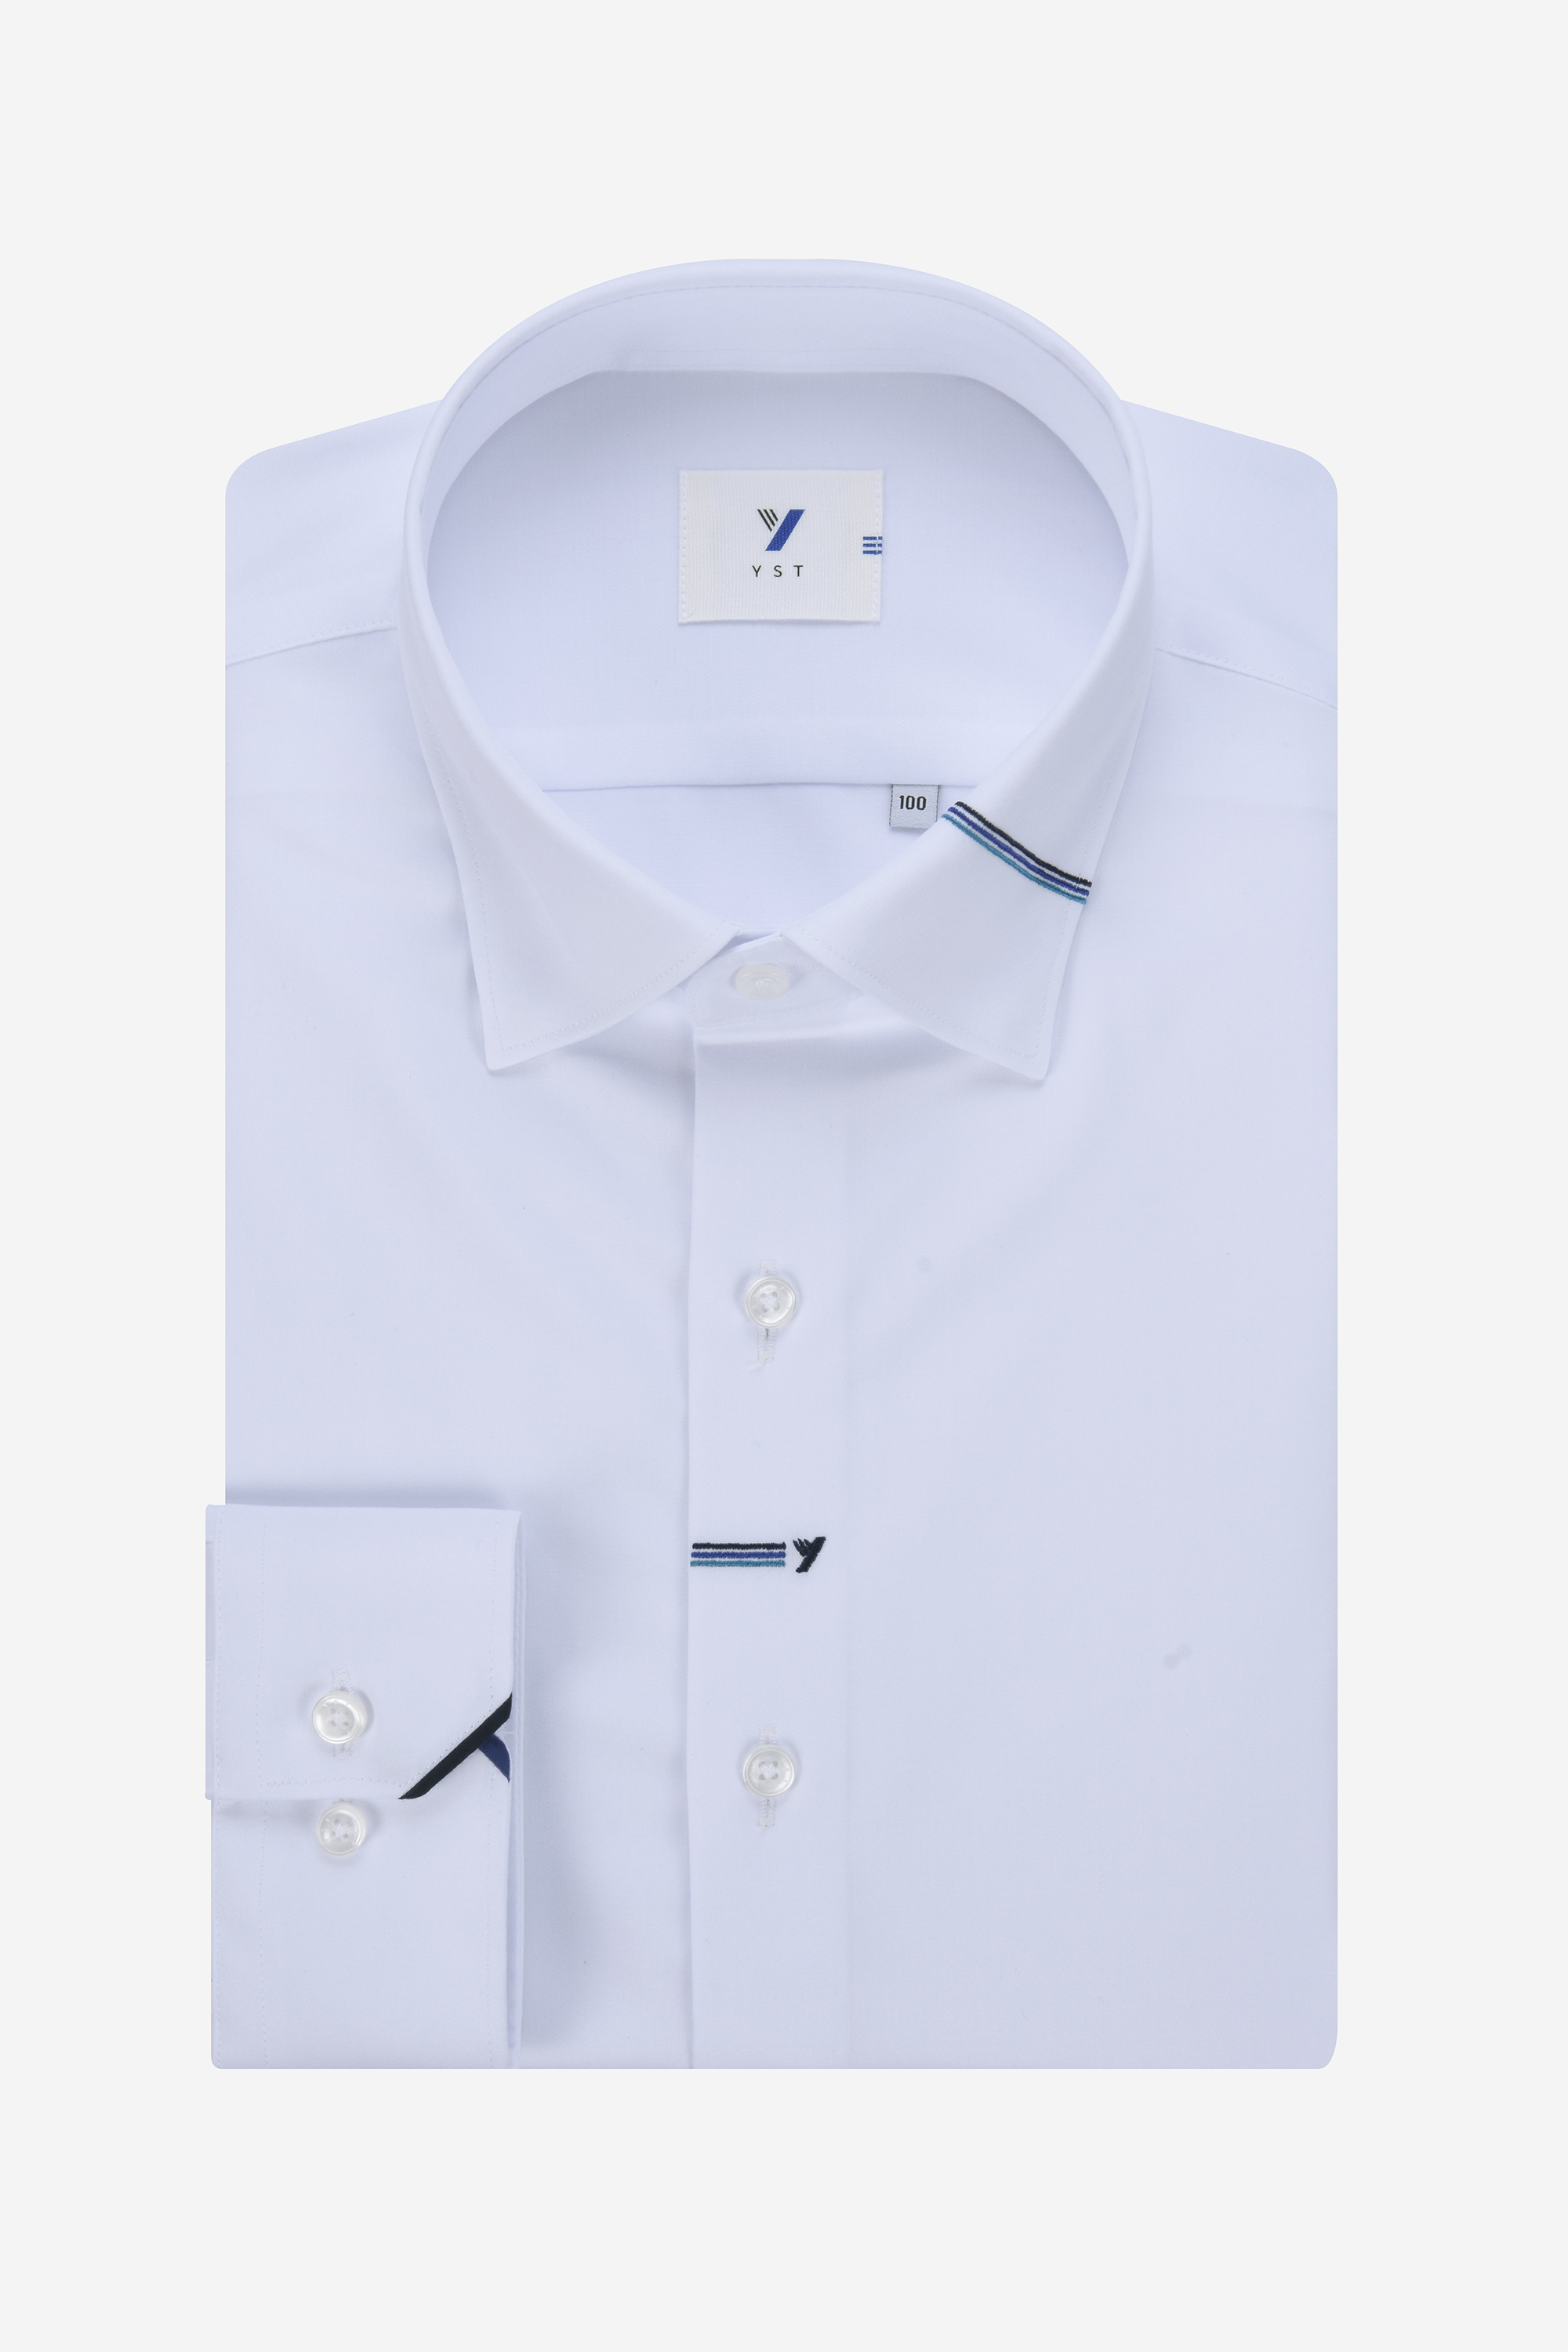 [공식스토어] Y스타일 면혼방 삼색자수 셔츠 화이트 YJ3SYS722WH